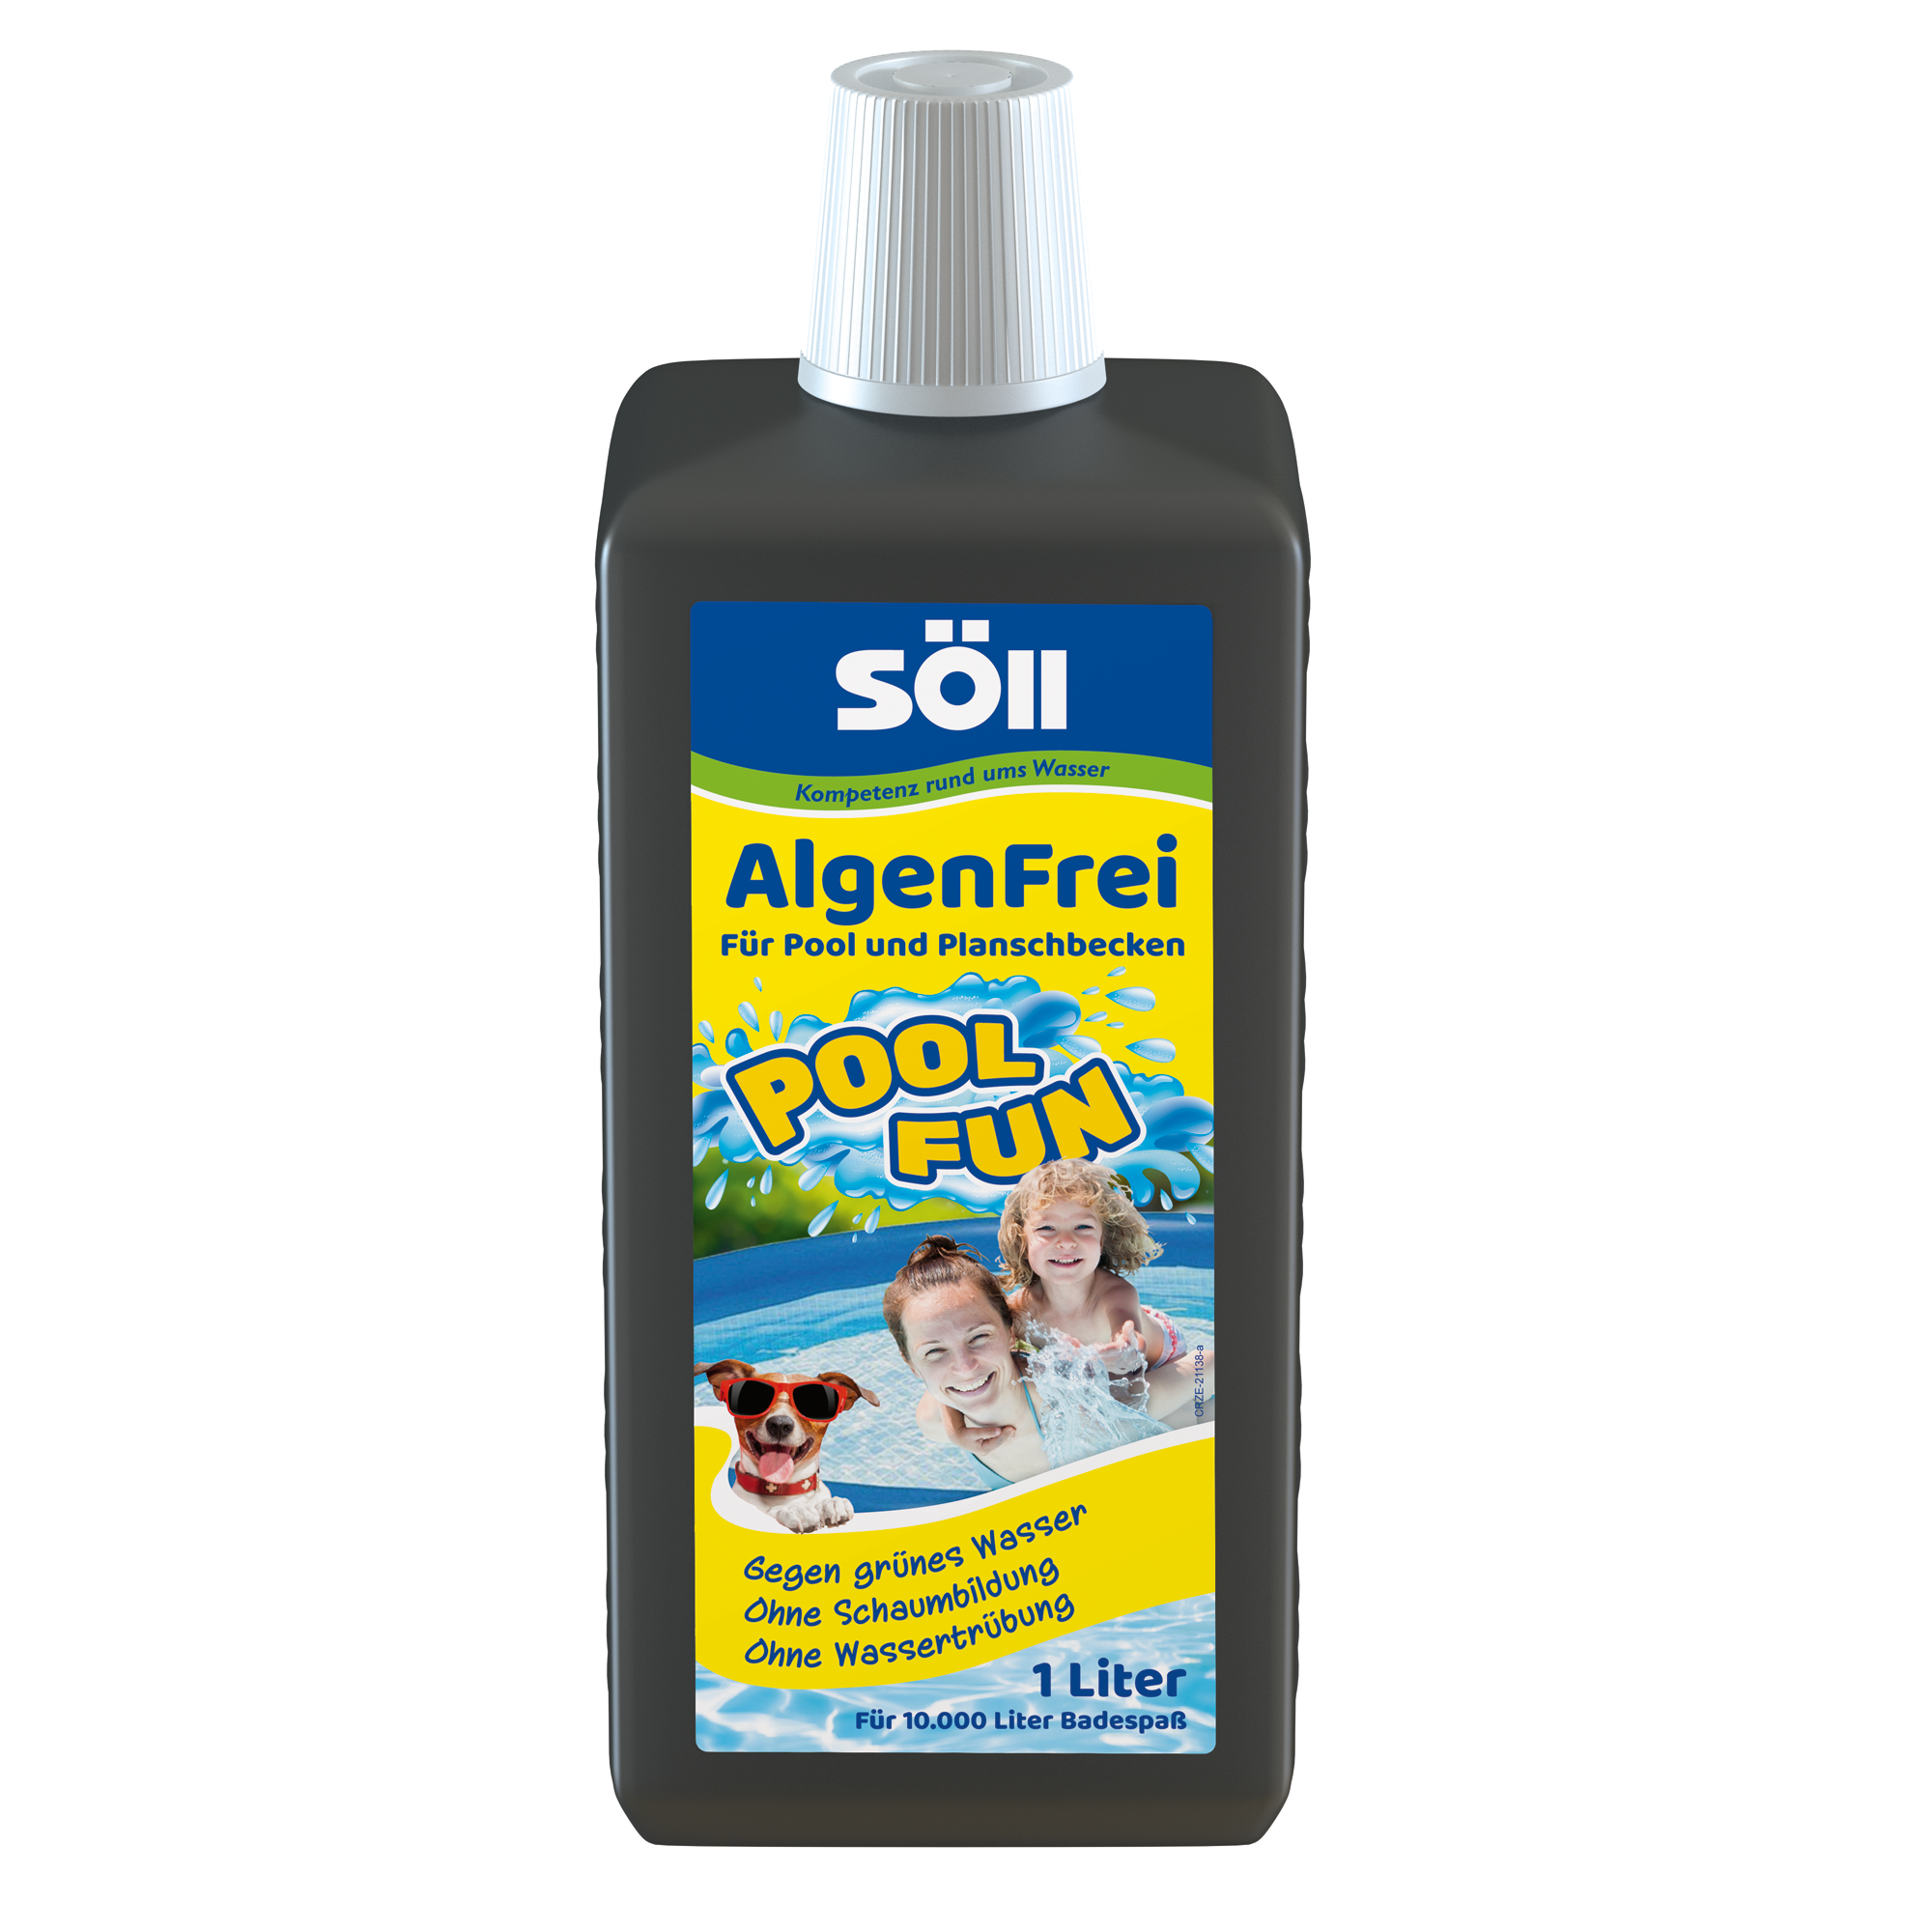 Algenentferner 'AlgenFrei' 1 Liter + product picture